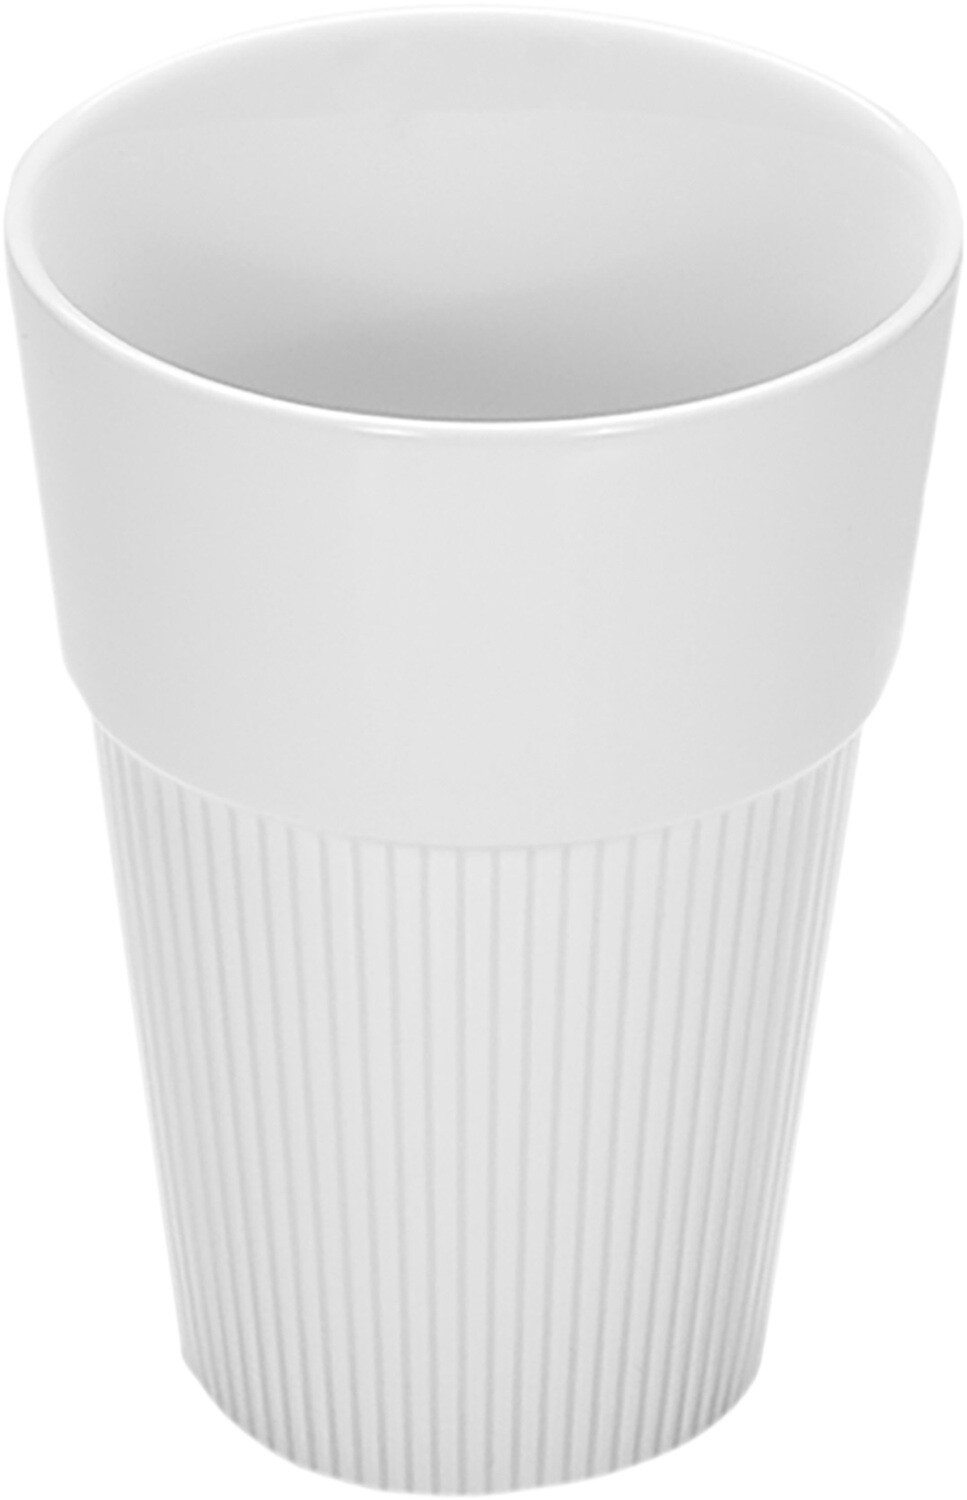 Balta porcelāna krūze, kas piemērota kafijas pasniegšanai.
Valge, ilma sangata, kõrge portselanist kohvitass.